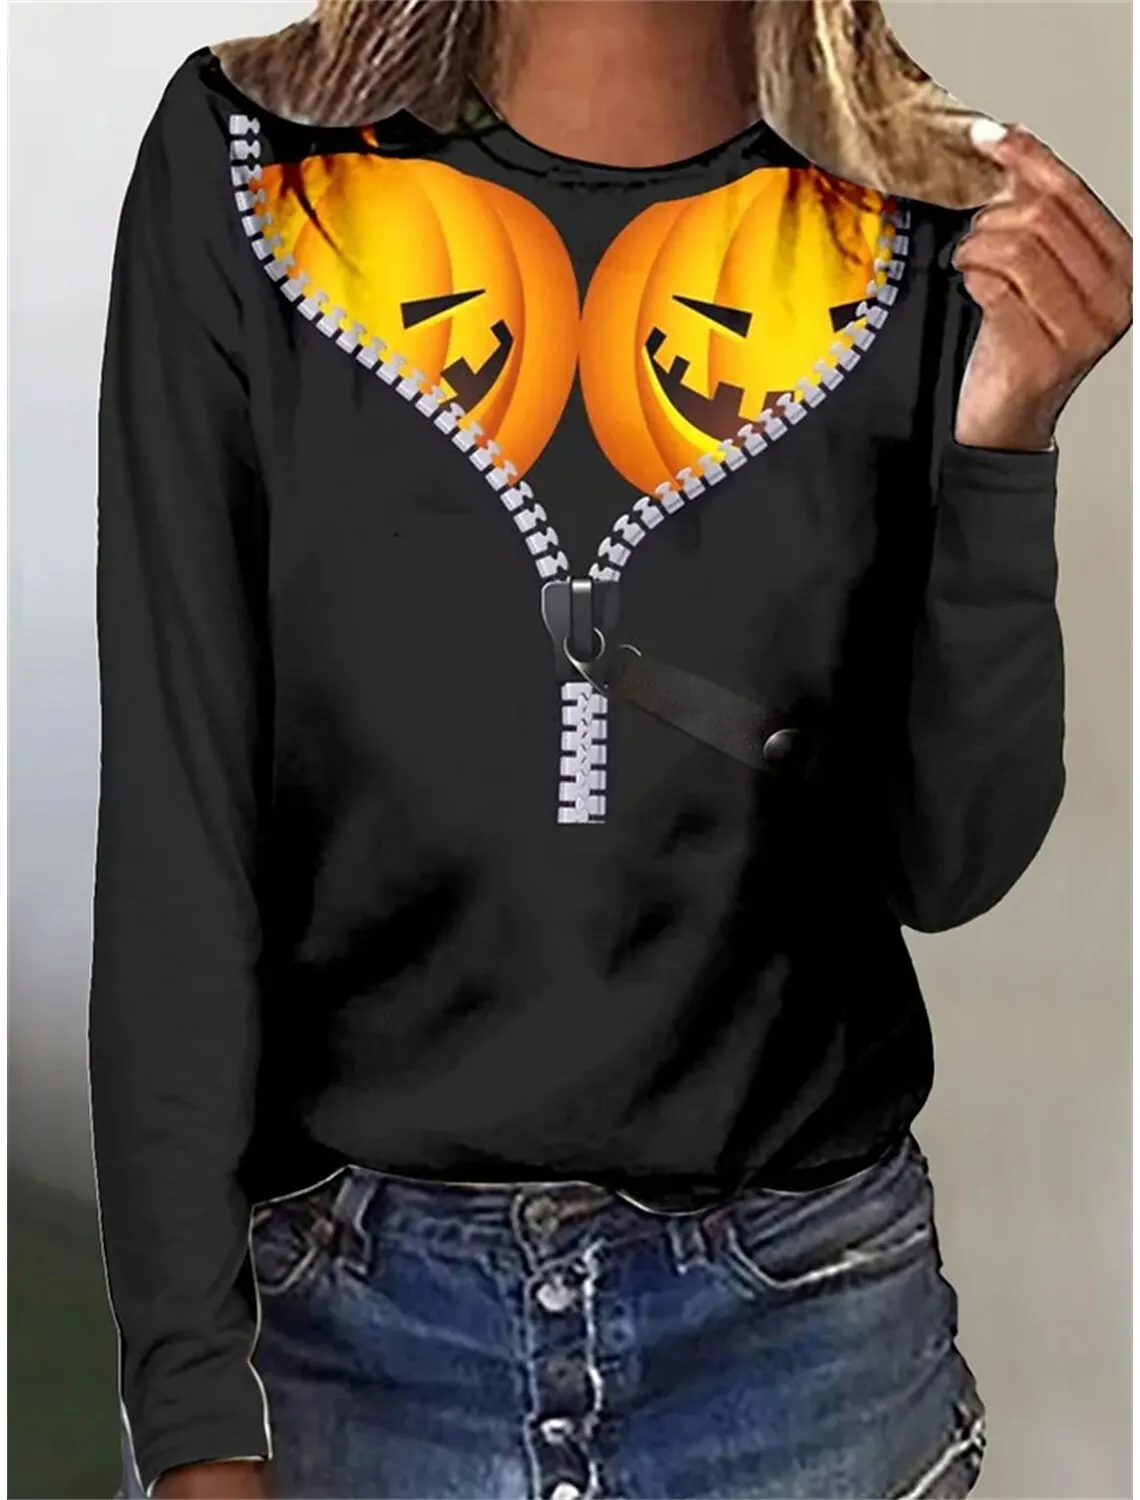 

Women's T shirt Tee Black Yellow Navy Blue Pumpkin Print Long Sleeve Halloween Weekend Basic Round Neck Regular Painting